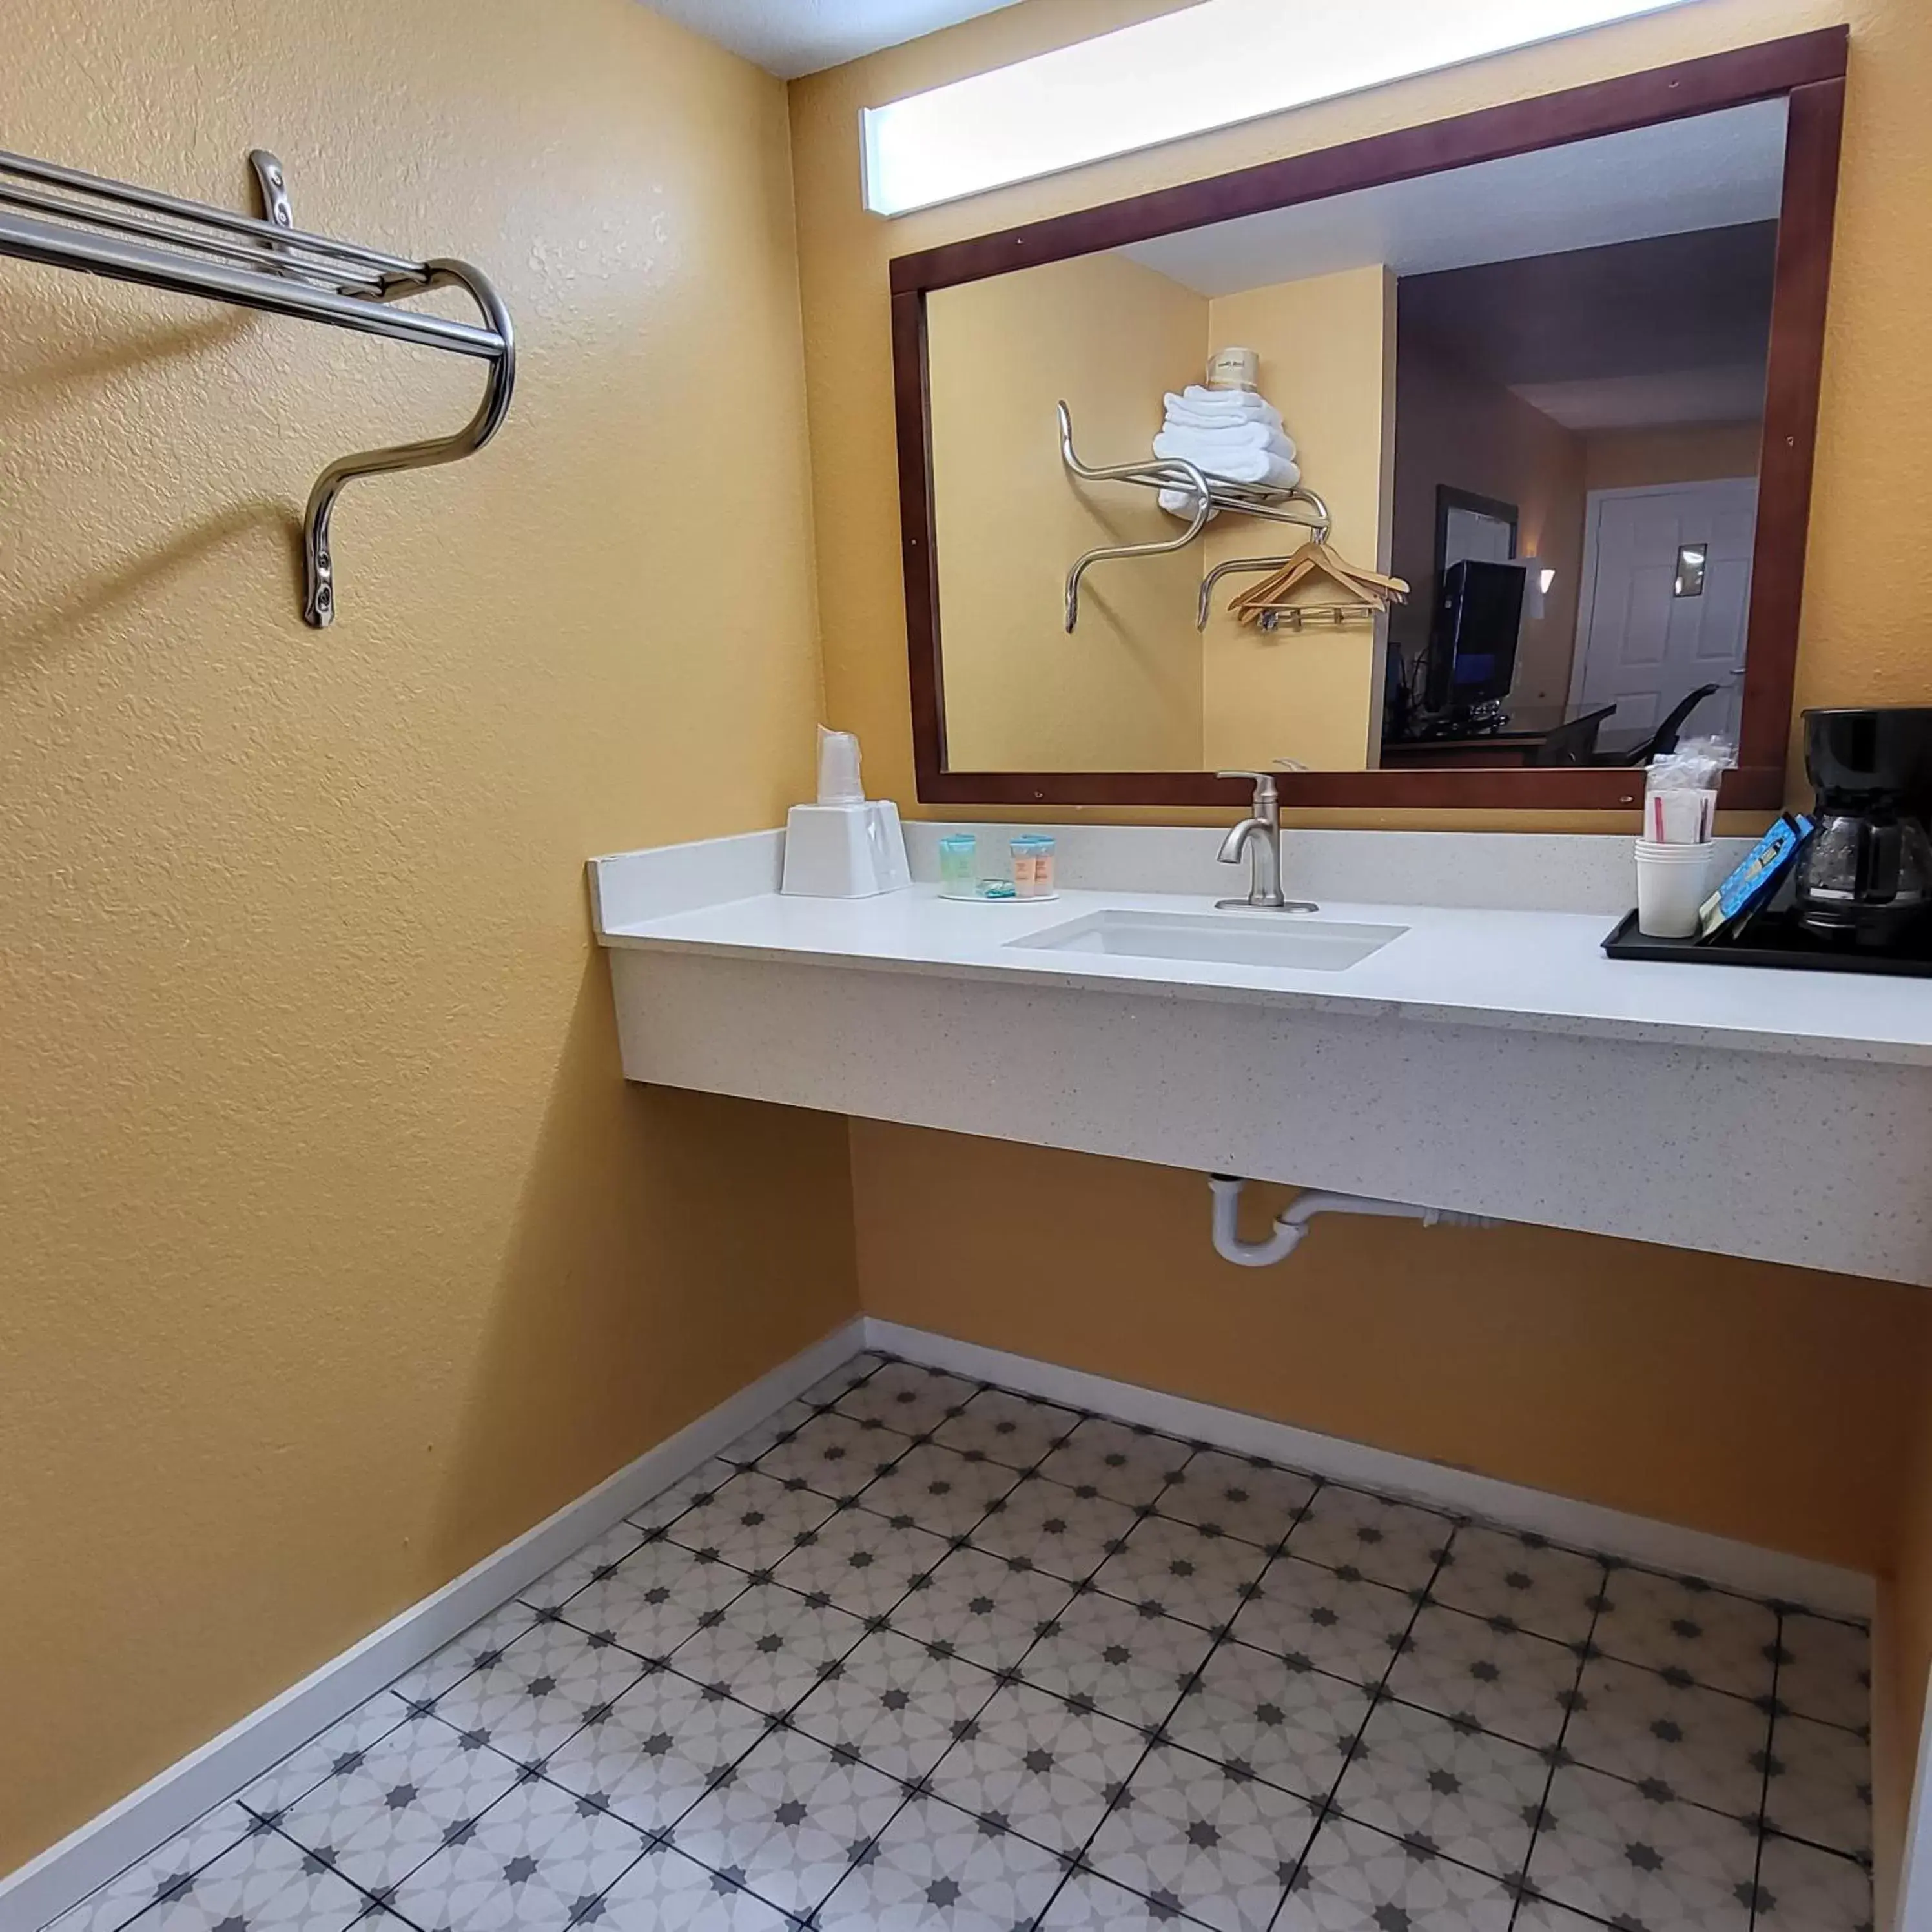 Bathroom in Olympic Inn & Suites Port Angeles